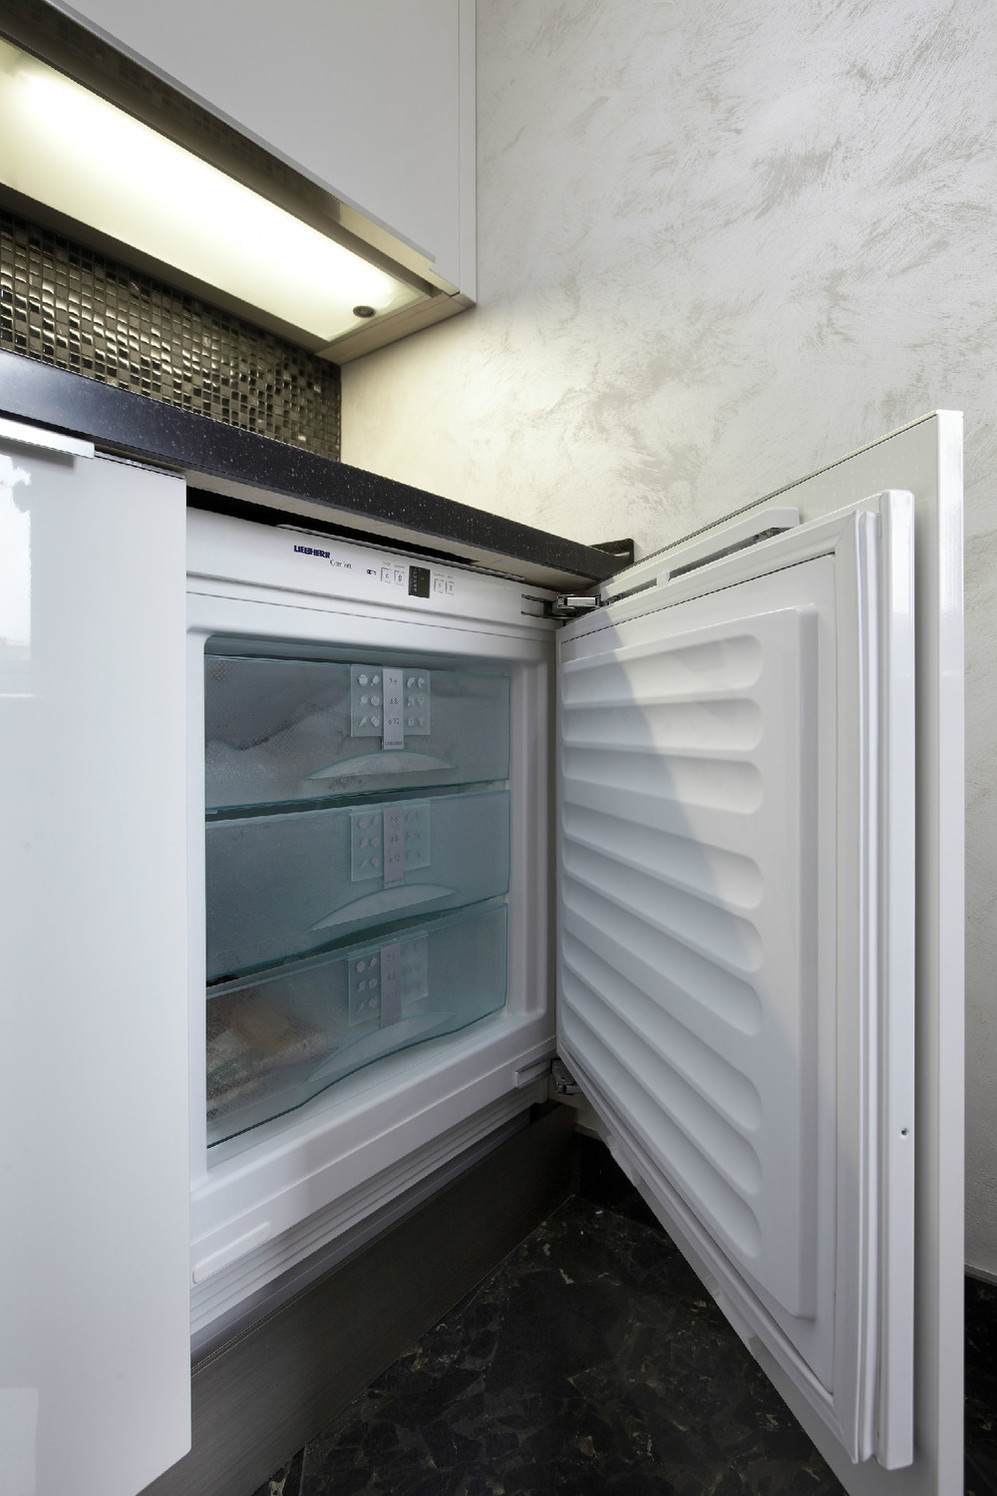 Современный холодильник